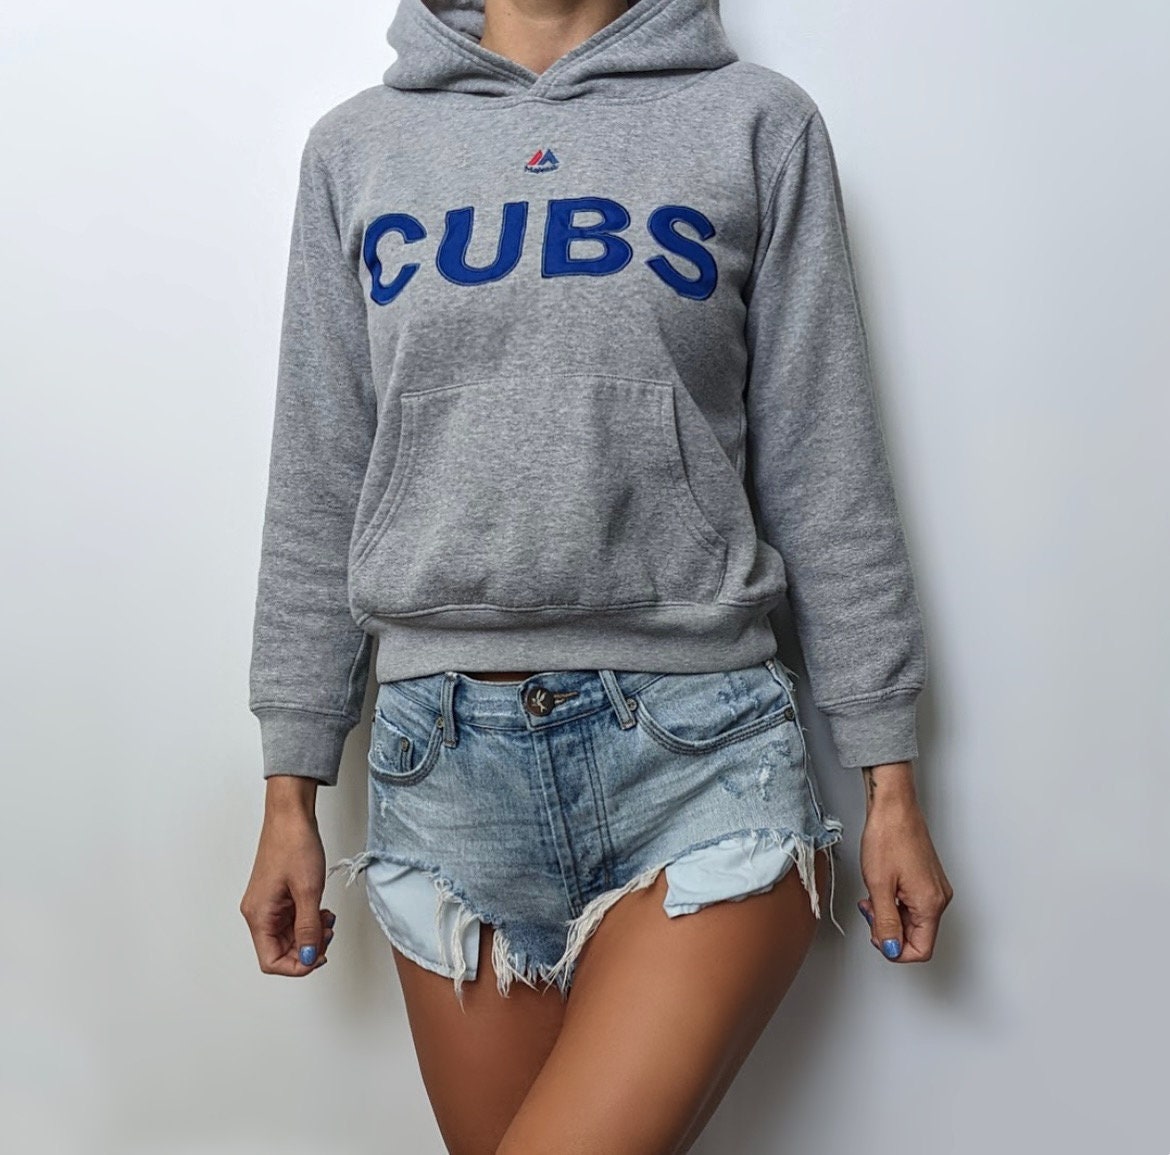 Vintage Cubs Sweatshirt 